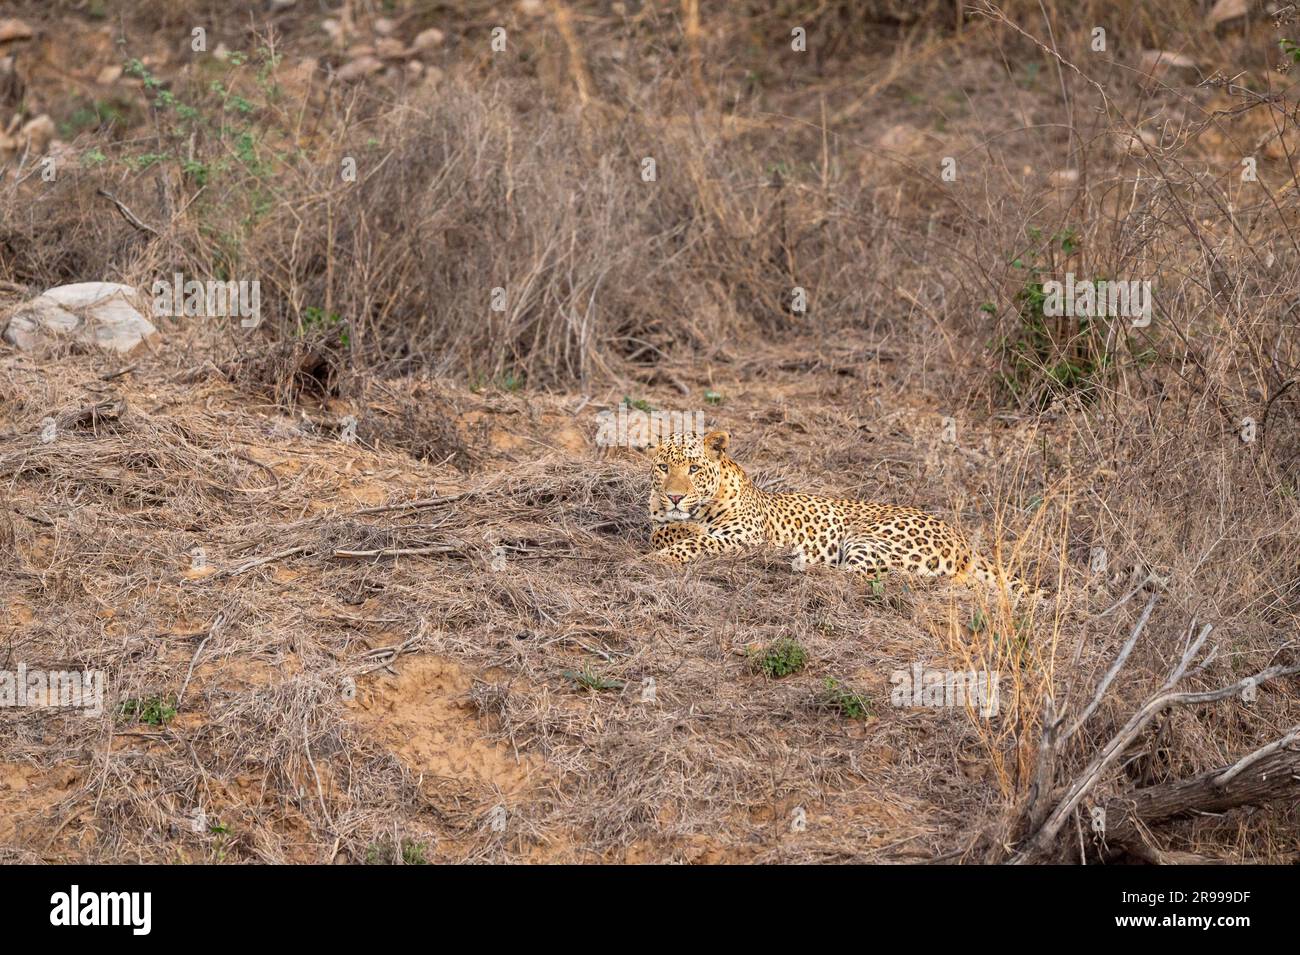 leopardo selvatico maschio o pantera o panthera pardus riposare o sedersi nella foresta secca nella stagione estiva safari serale riserva di leopardi di jhalana jaipur india Foto Stock